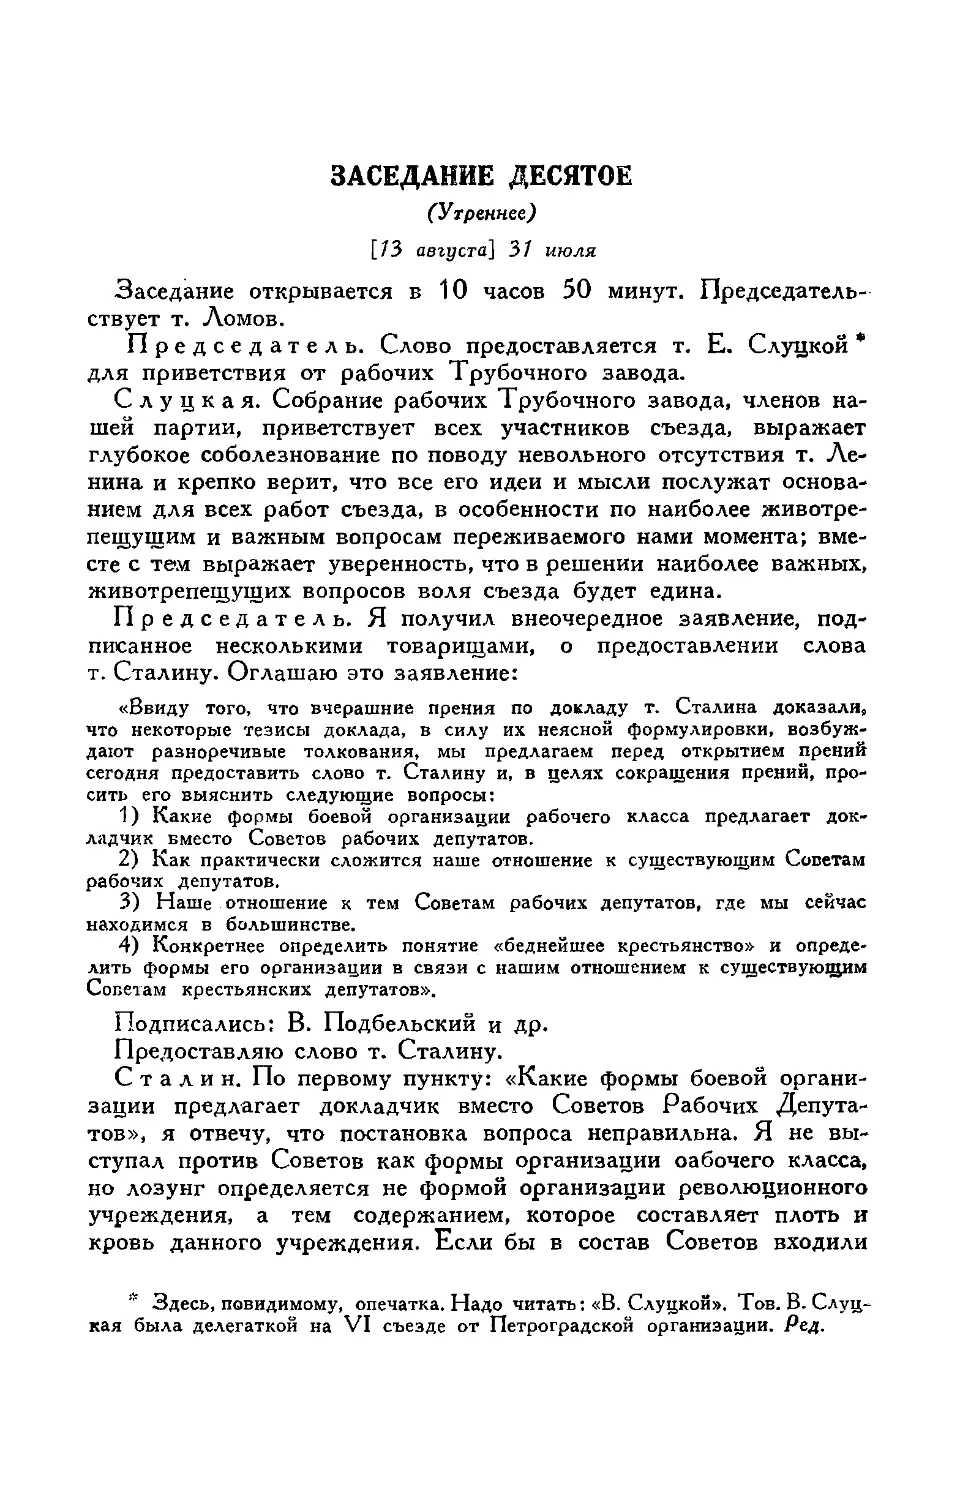 Приветствия съезду
Внеочередное заявление группы делегатов по докладу т. Сталина
Ответ т. Сталина